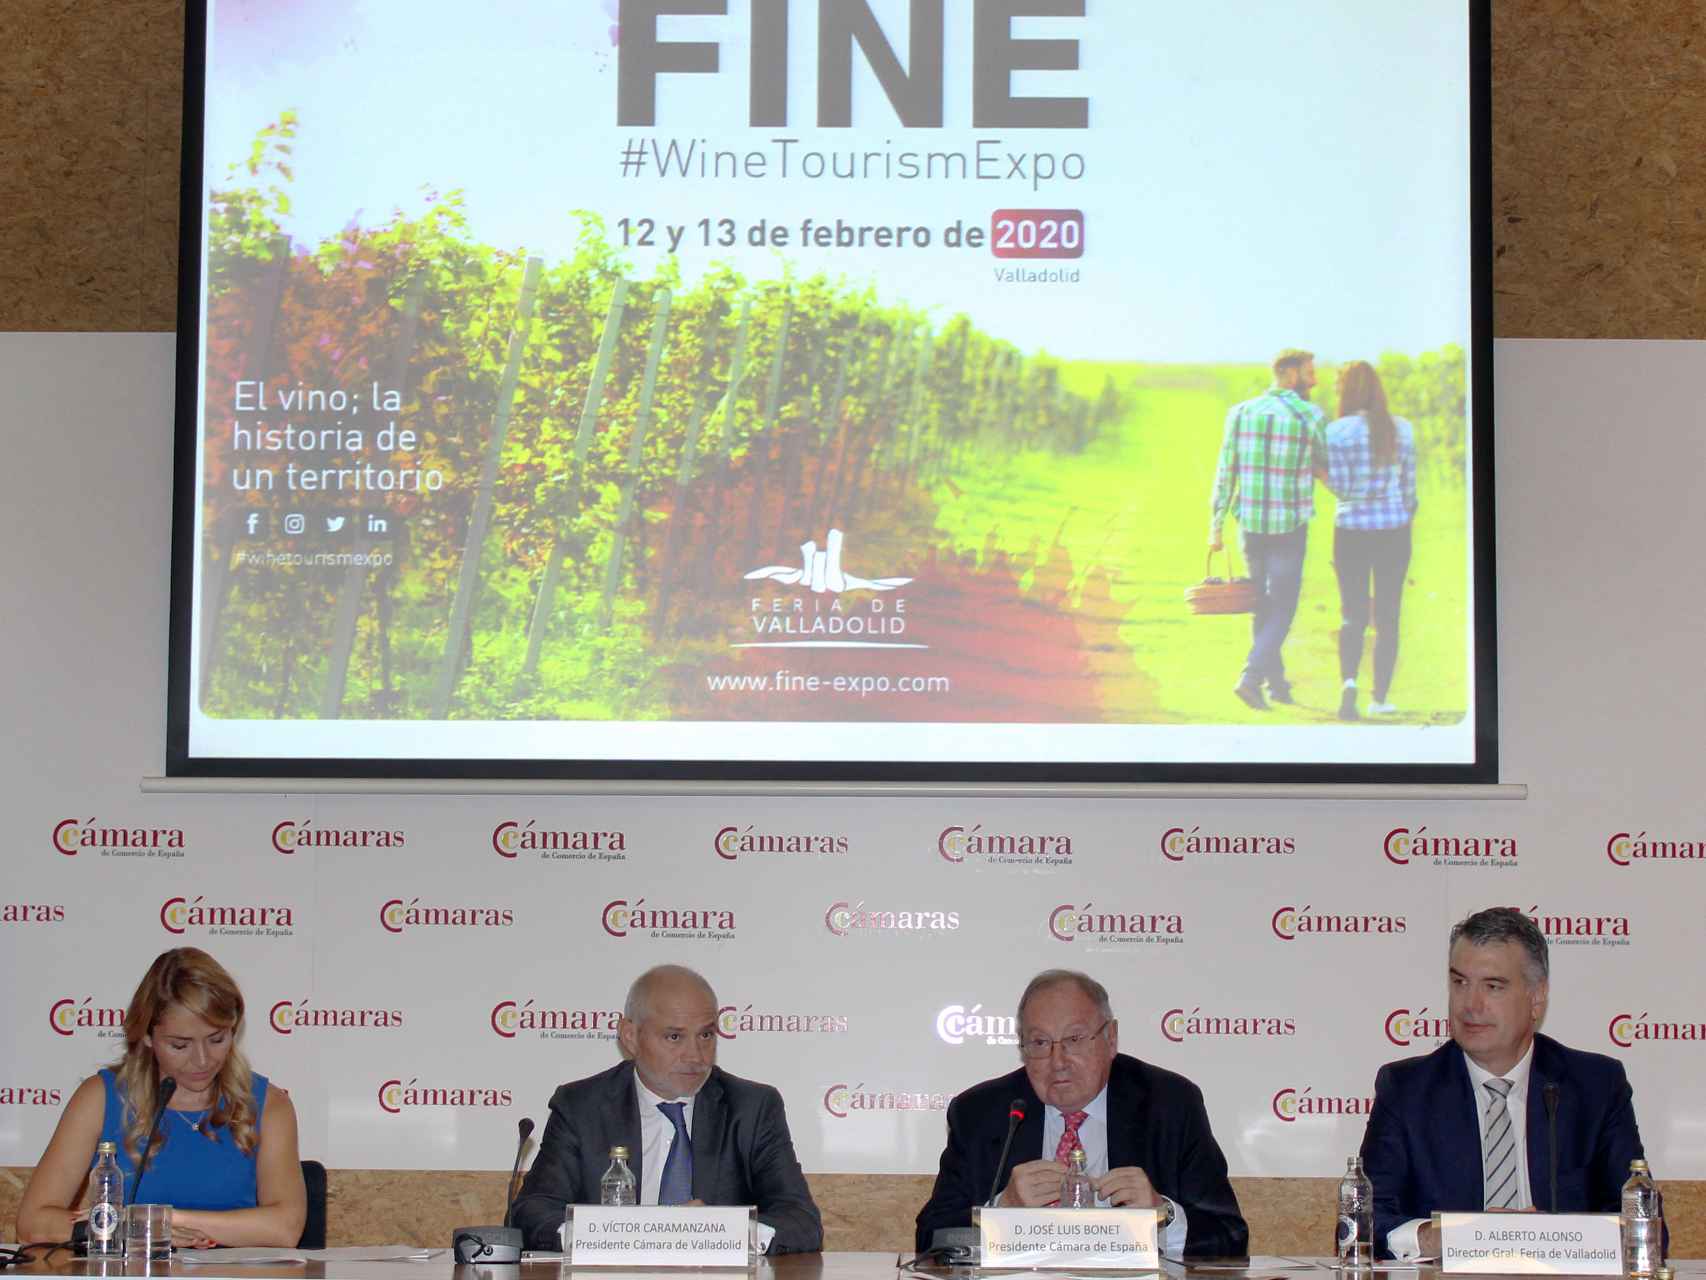 Imagen de la presentación de FINE en Madrid en 2019